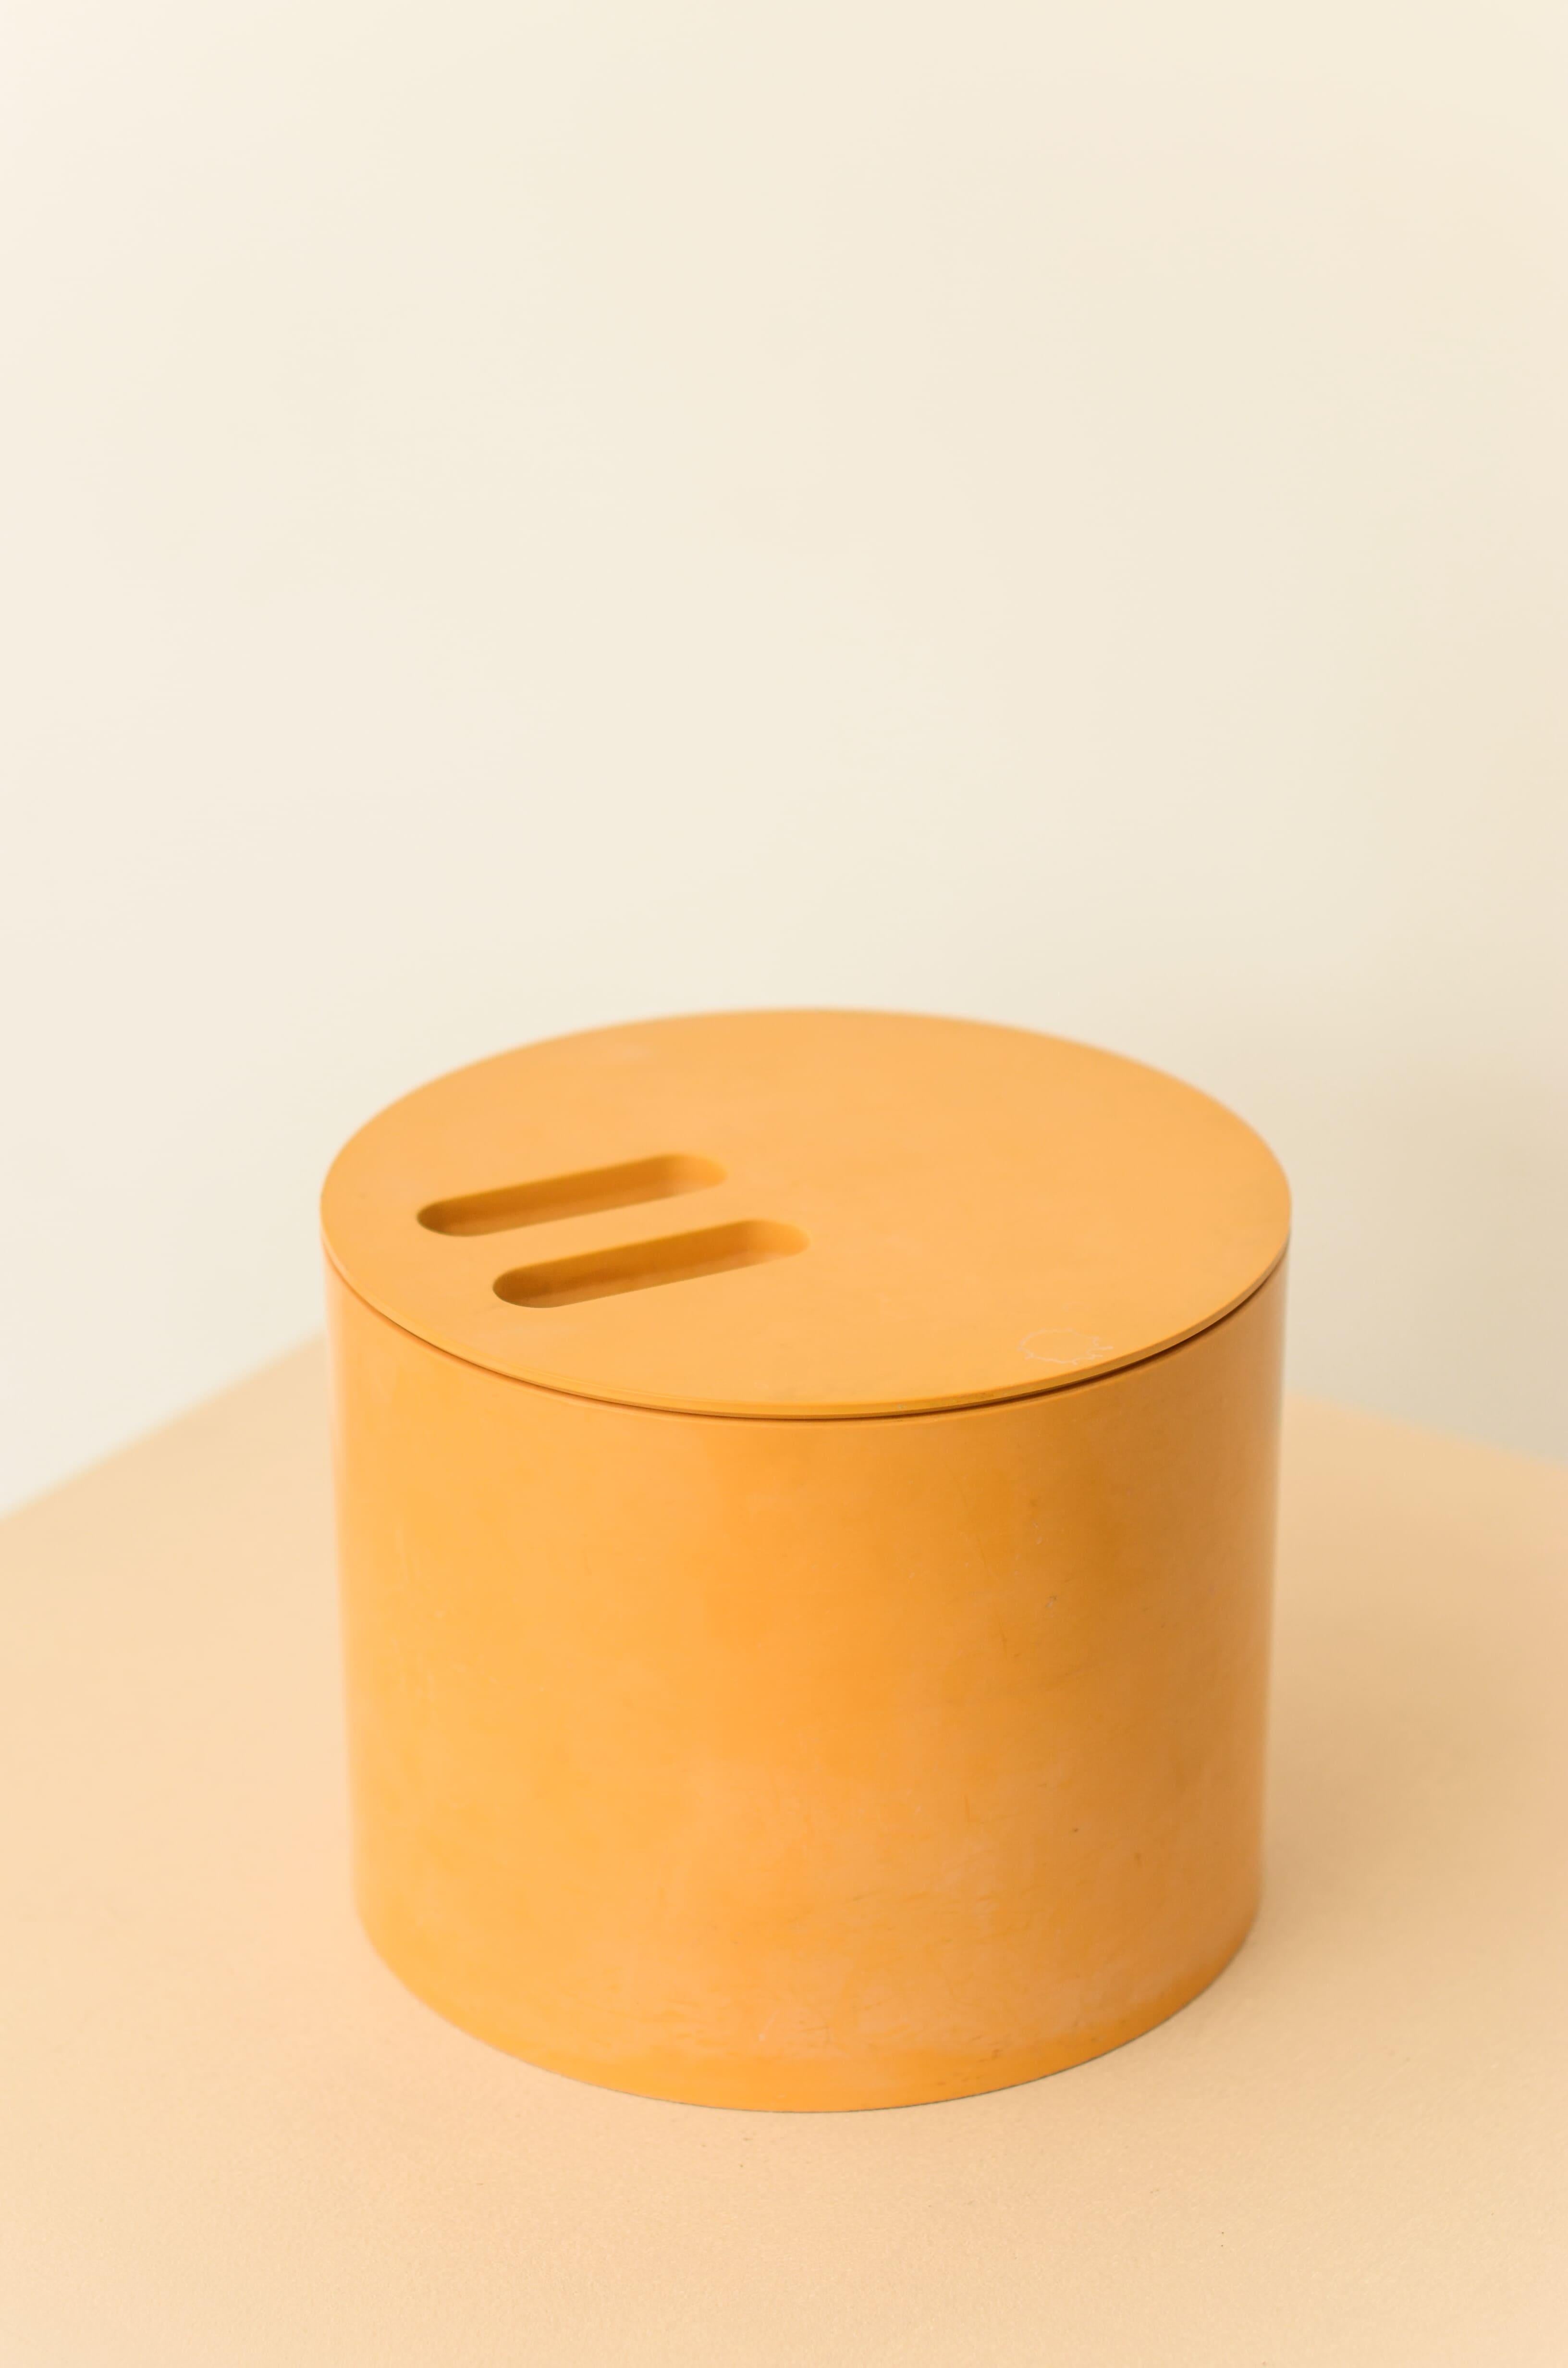 Eiskübel der Kunststofffabrik Hévea, die in den 1970er Jahren eine von den Architekten Jorge Zalszupin, Paulo Jorge Pedreira und Oswaldo Mellone entworfene Linie von Gebrauchsgegenständen namens Eva auf den Markt brachte. Enthält nicht die Pinzette.